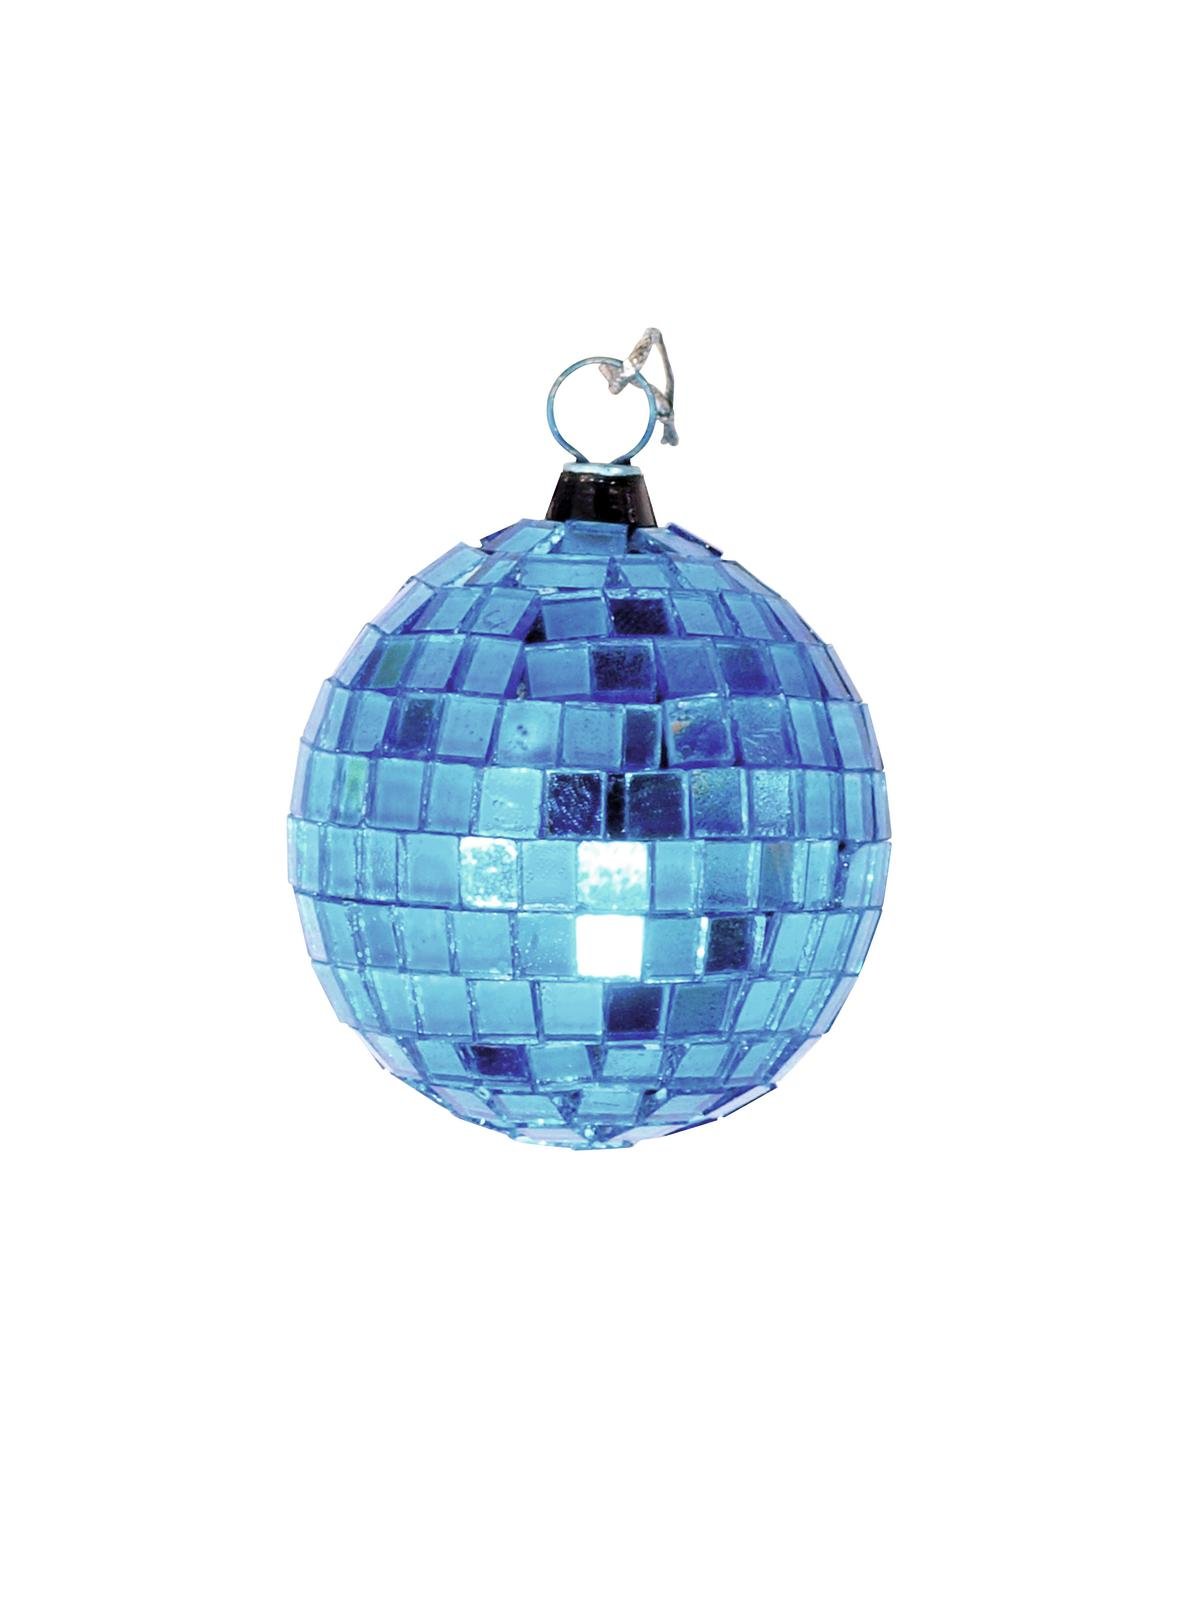 Spiegelkugel 5cm blau- Discokugel Echtglas zur Dekoration - mirrorball blue